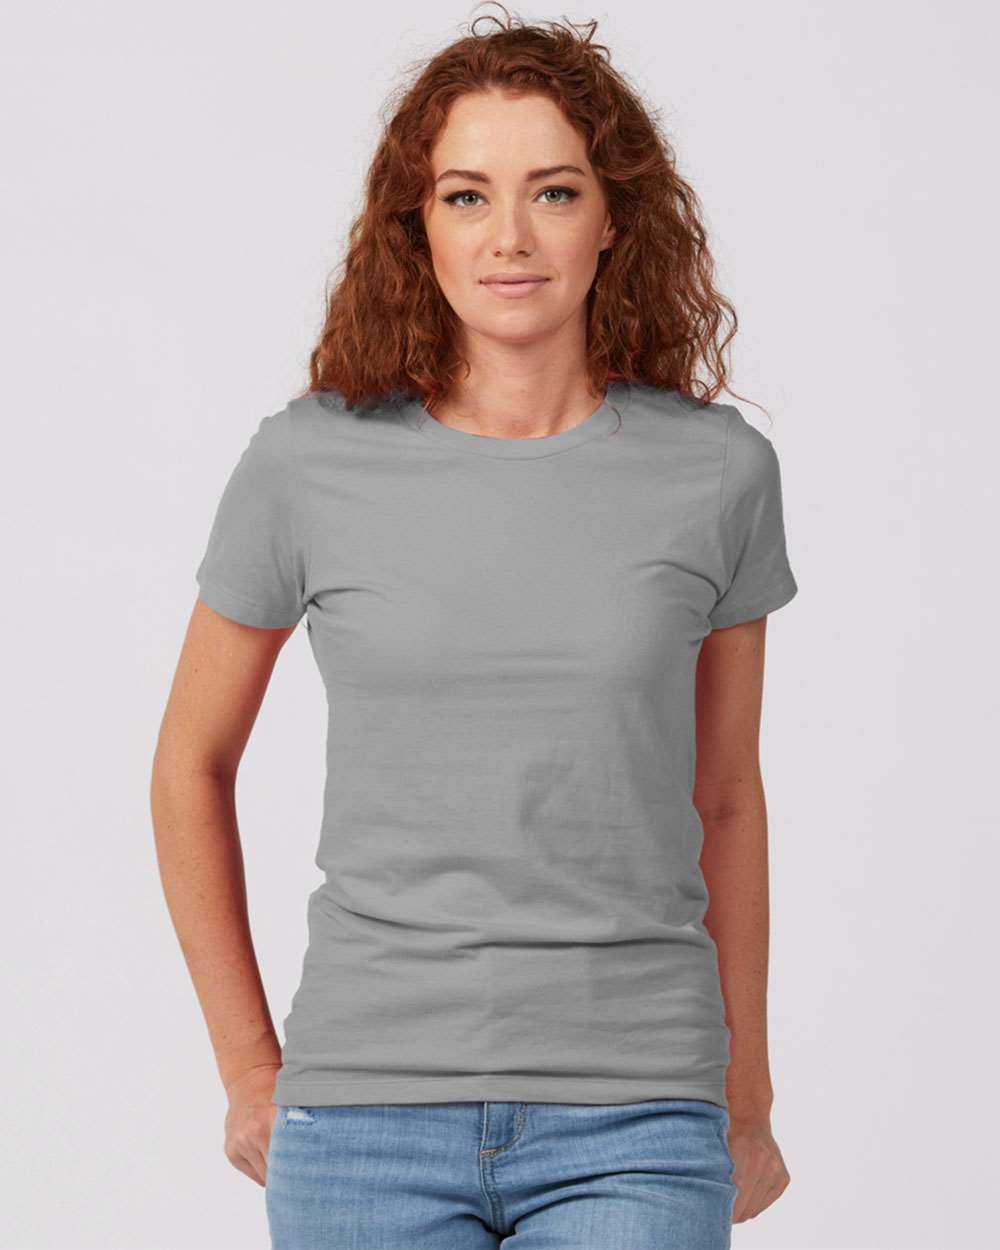 Tultex 516 Women's Premium Cotton T-Shirt - Silver - HIT a Double